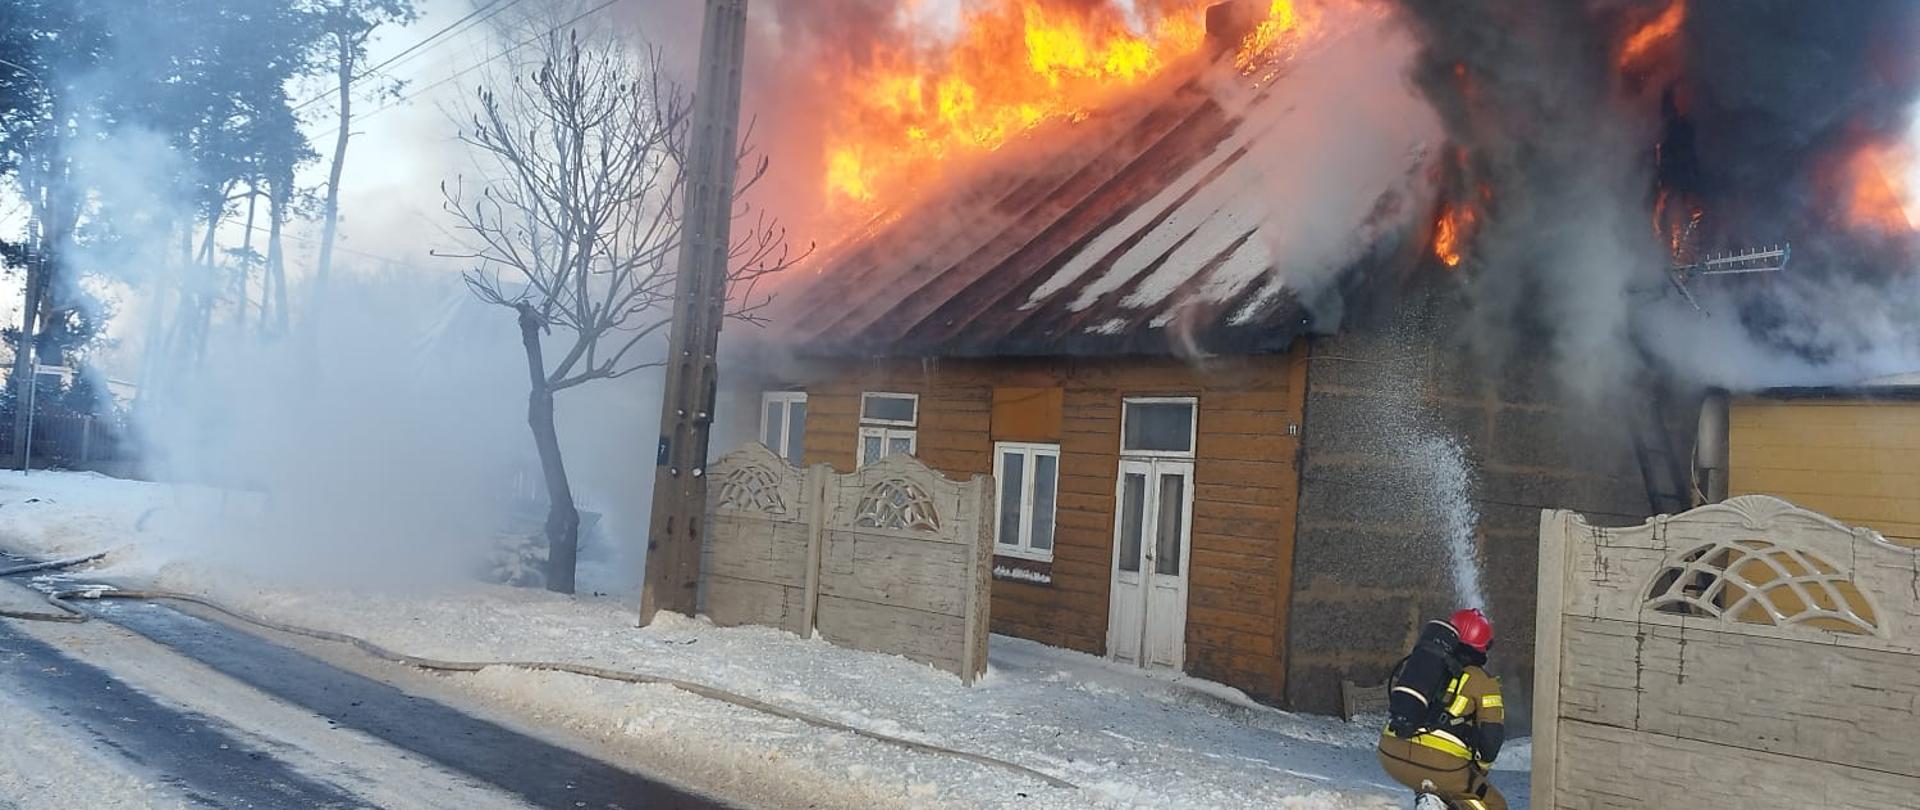 Pożar drewnianego budynku mieszkalnego. Jeden ze strażaków podaje prąd wody na palący się budynek, ma założony aparat powietrzny na plecach. Dookoła panuje zimowa aura oraz leży śnieg.